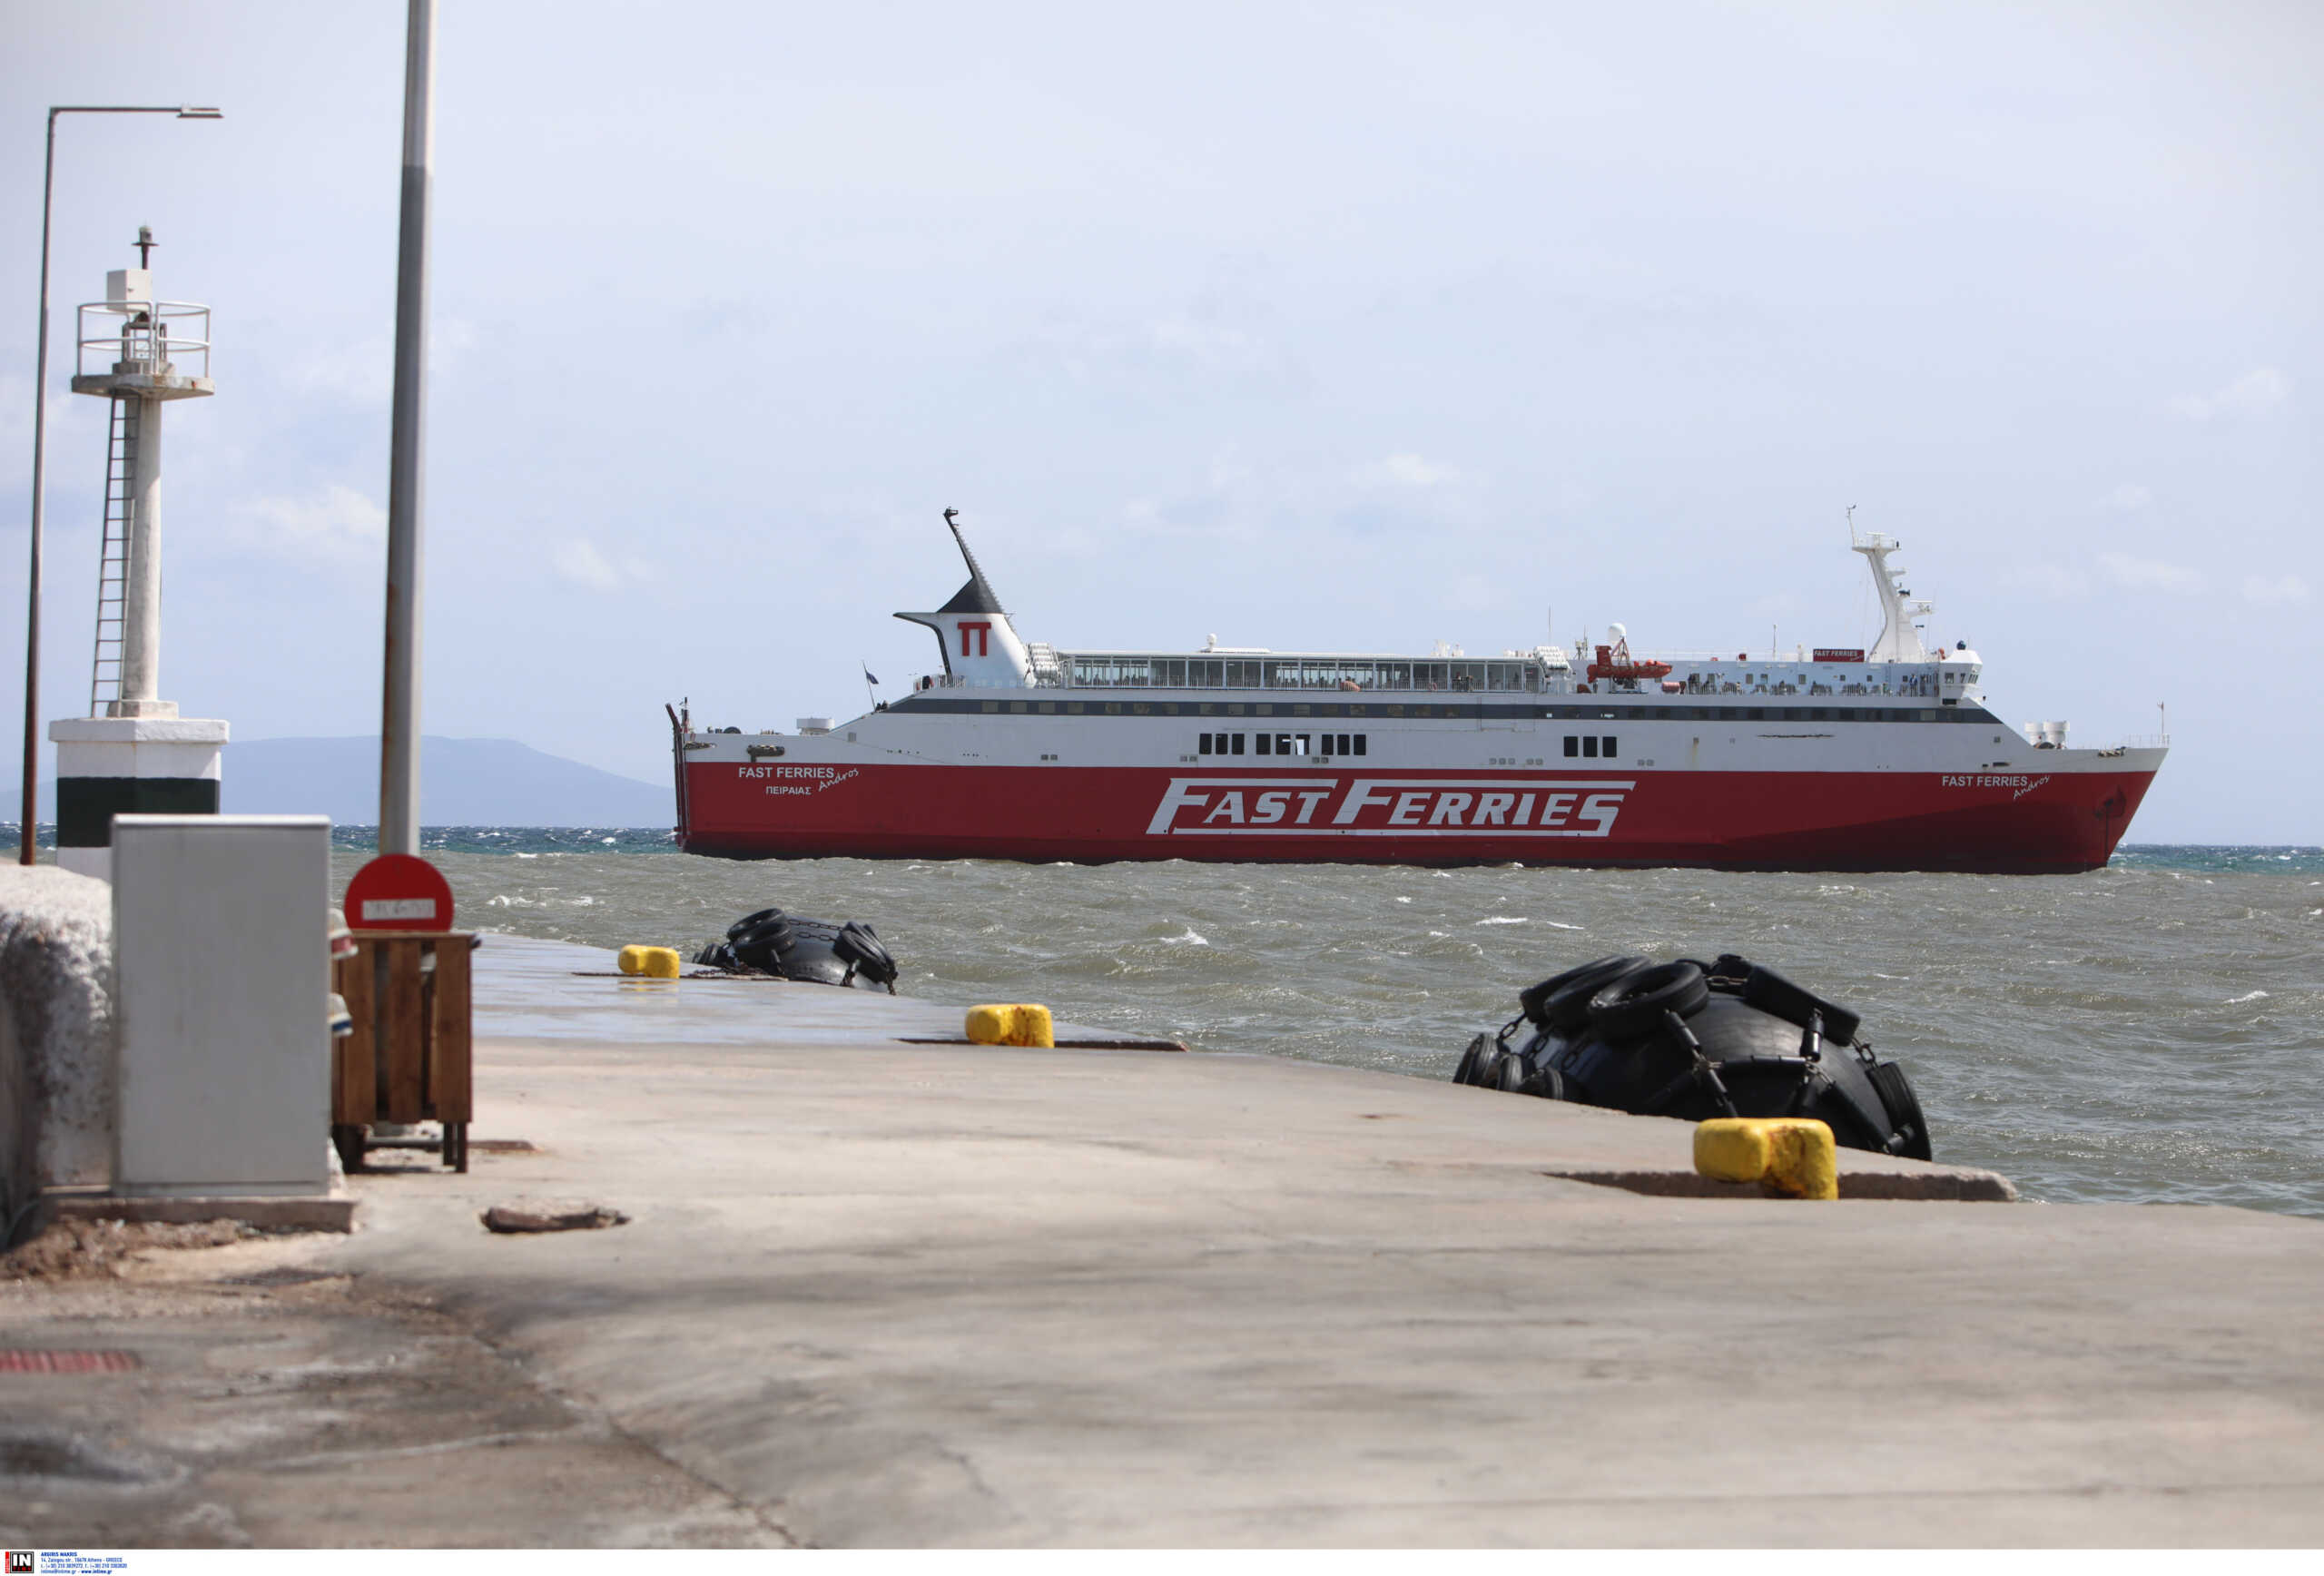 Ραφήνα: Οργισμένοι οι επιβάτες του «Fast Ferries Andros» που παραμένει έξω από το λιμάνι μετά το πρωινό μπλέξιμο των αγκυρών 3 πλοίων